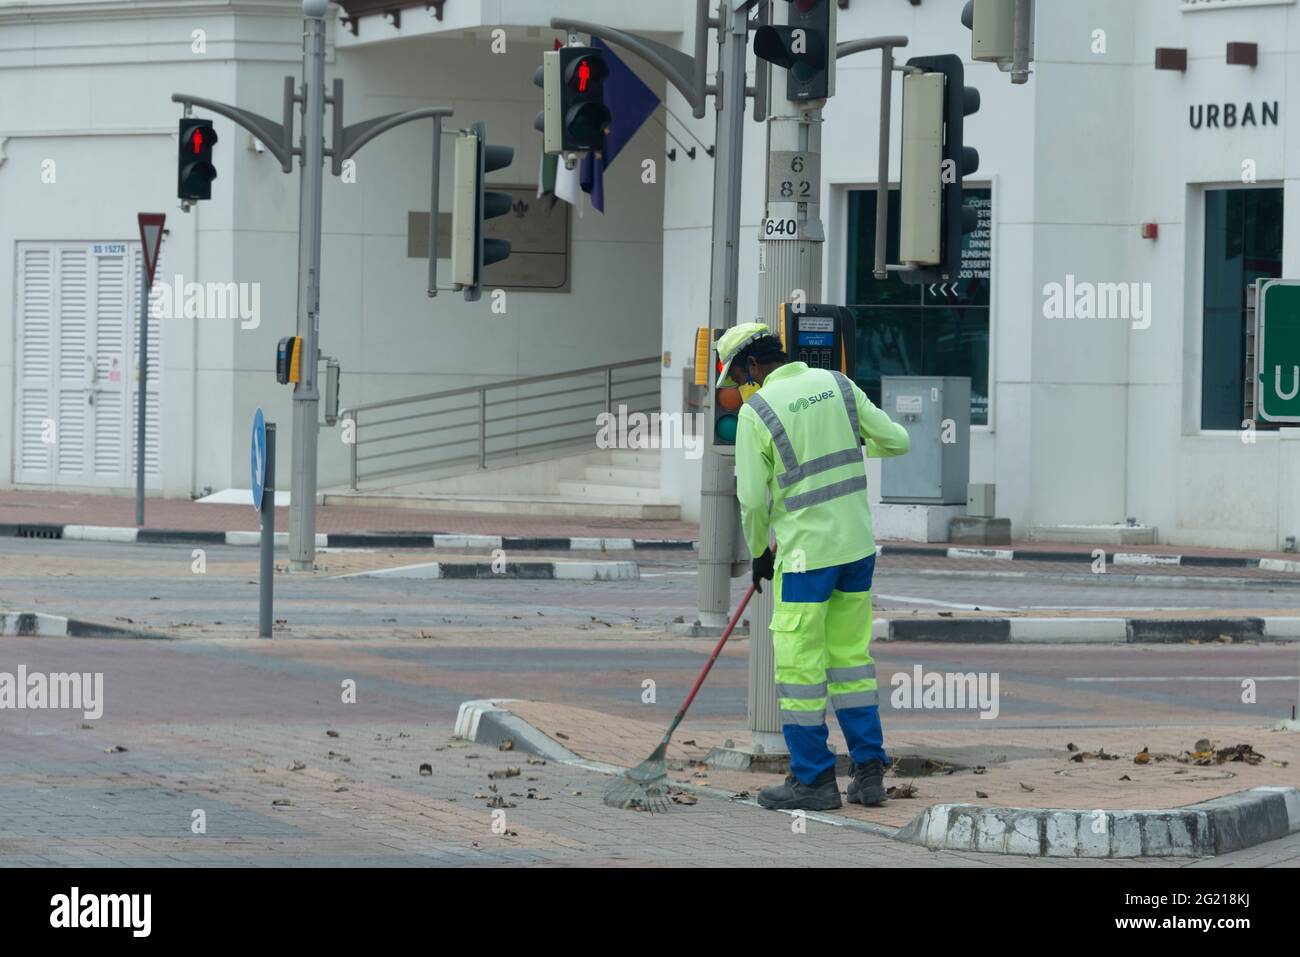 Employé de la municipalité de Dubaï en service pendant le confinement de Covid-19. Banque D'Images